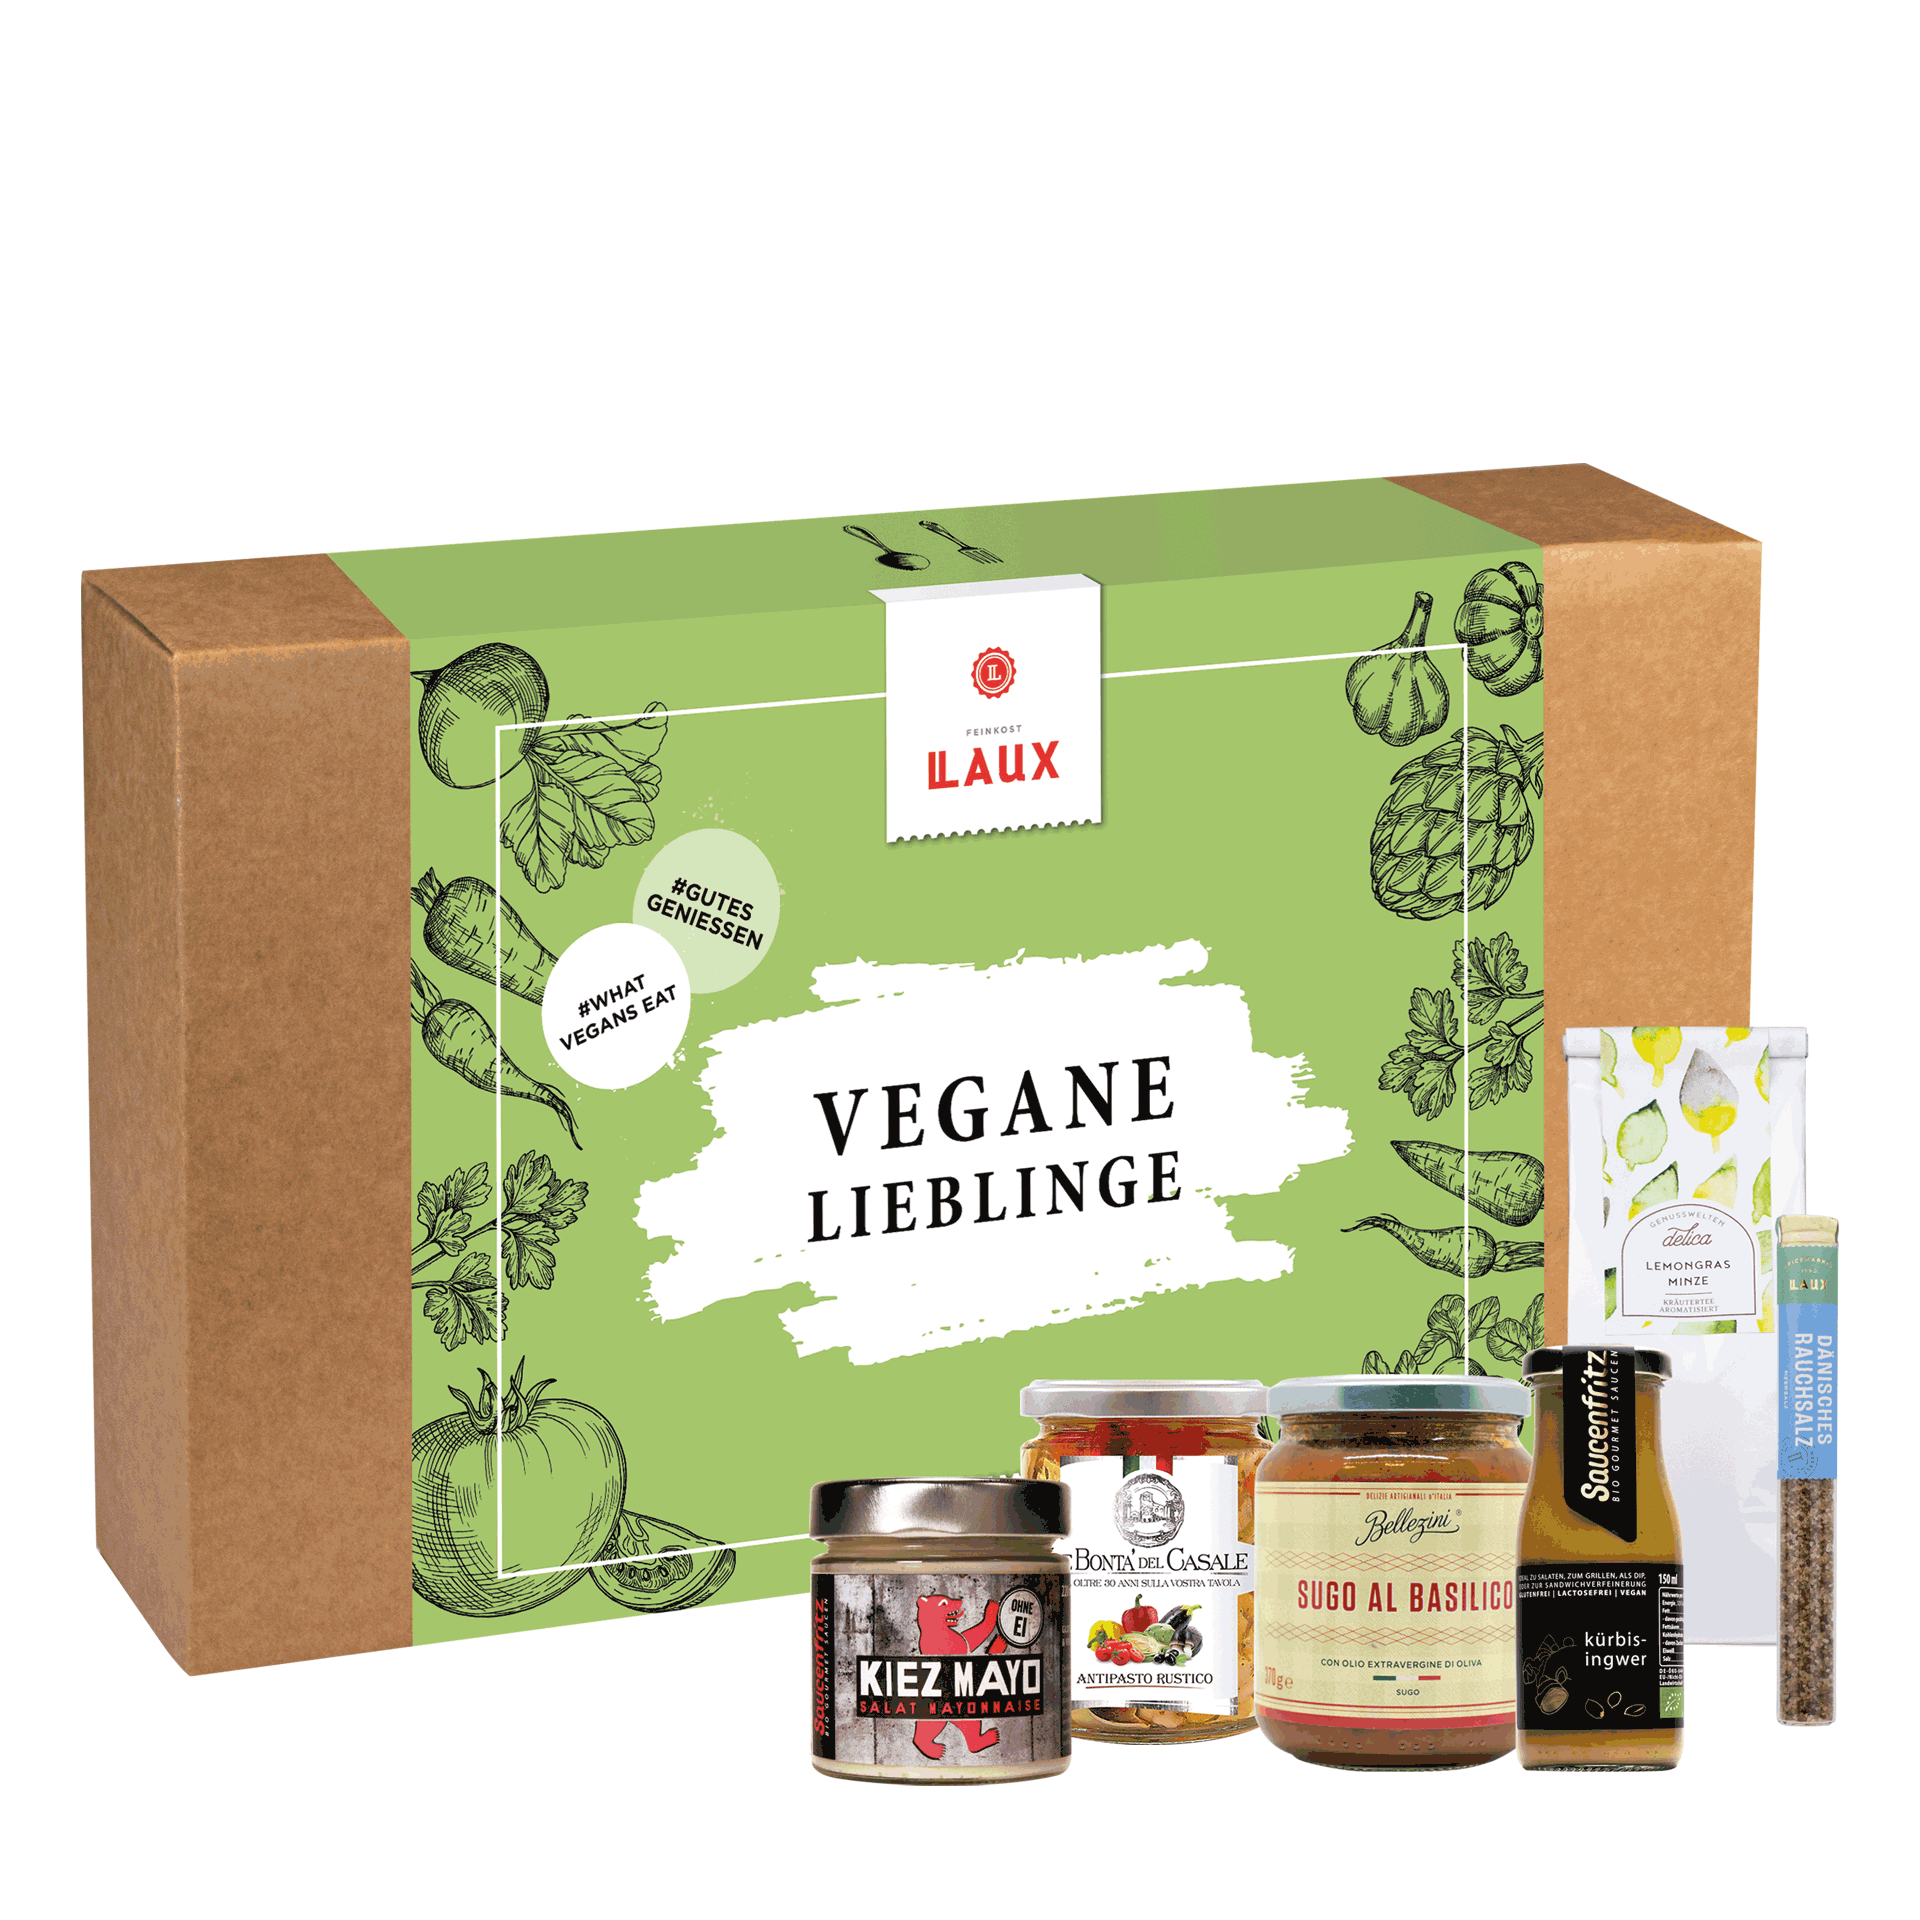 LAUX Vegane Lieblinge Geschenkset Verpackung und Produkte